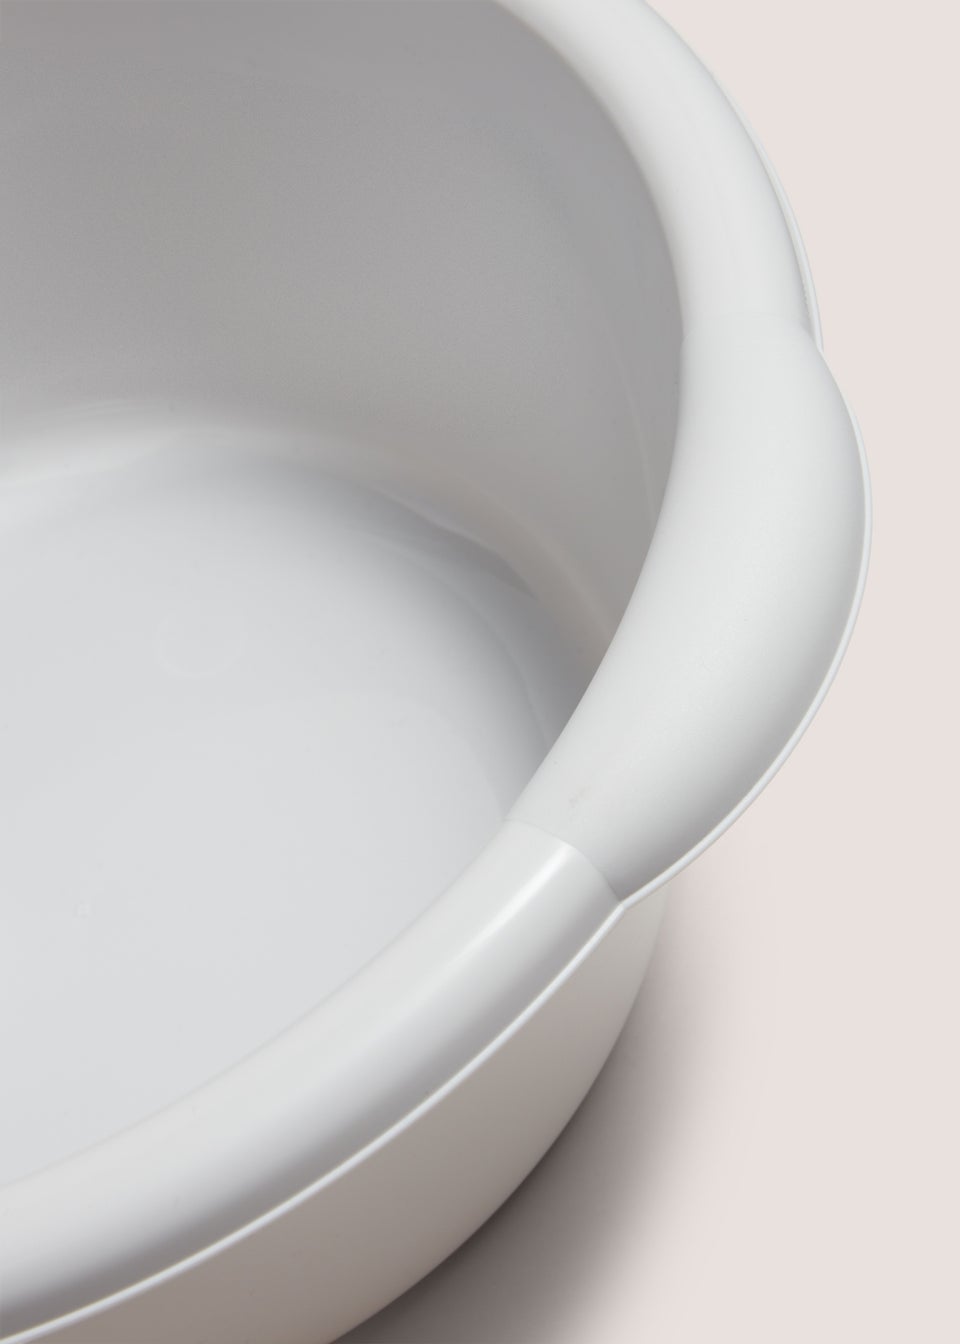 Grey Round Wash Bowl (40cm x 30cm x 16cm)